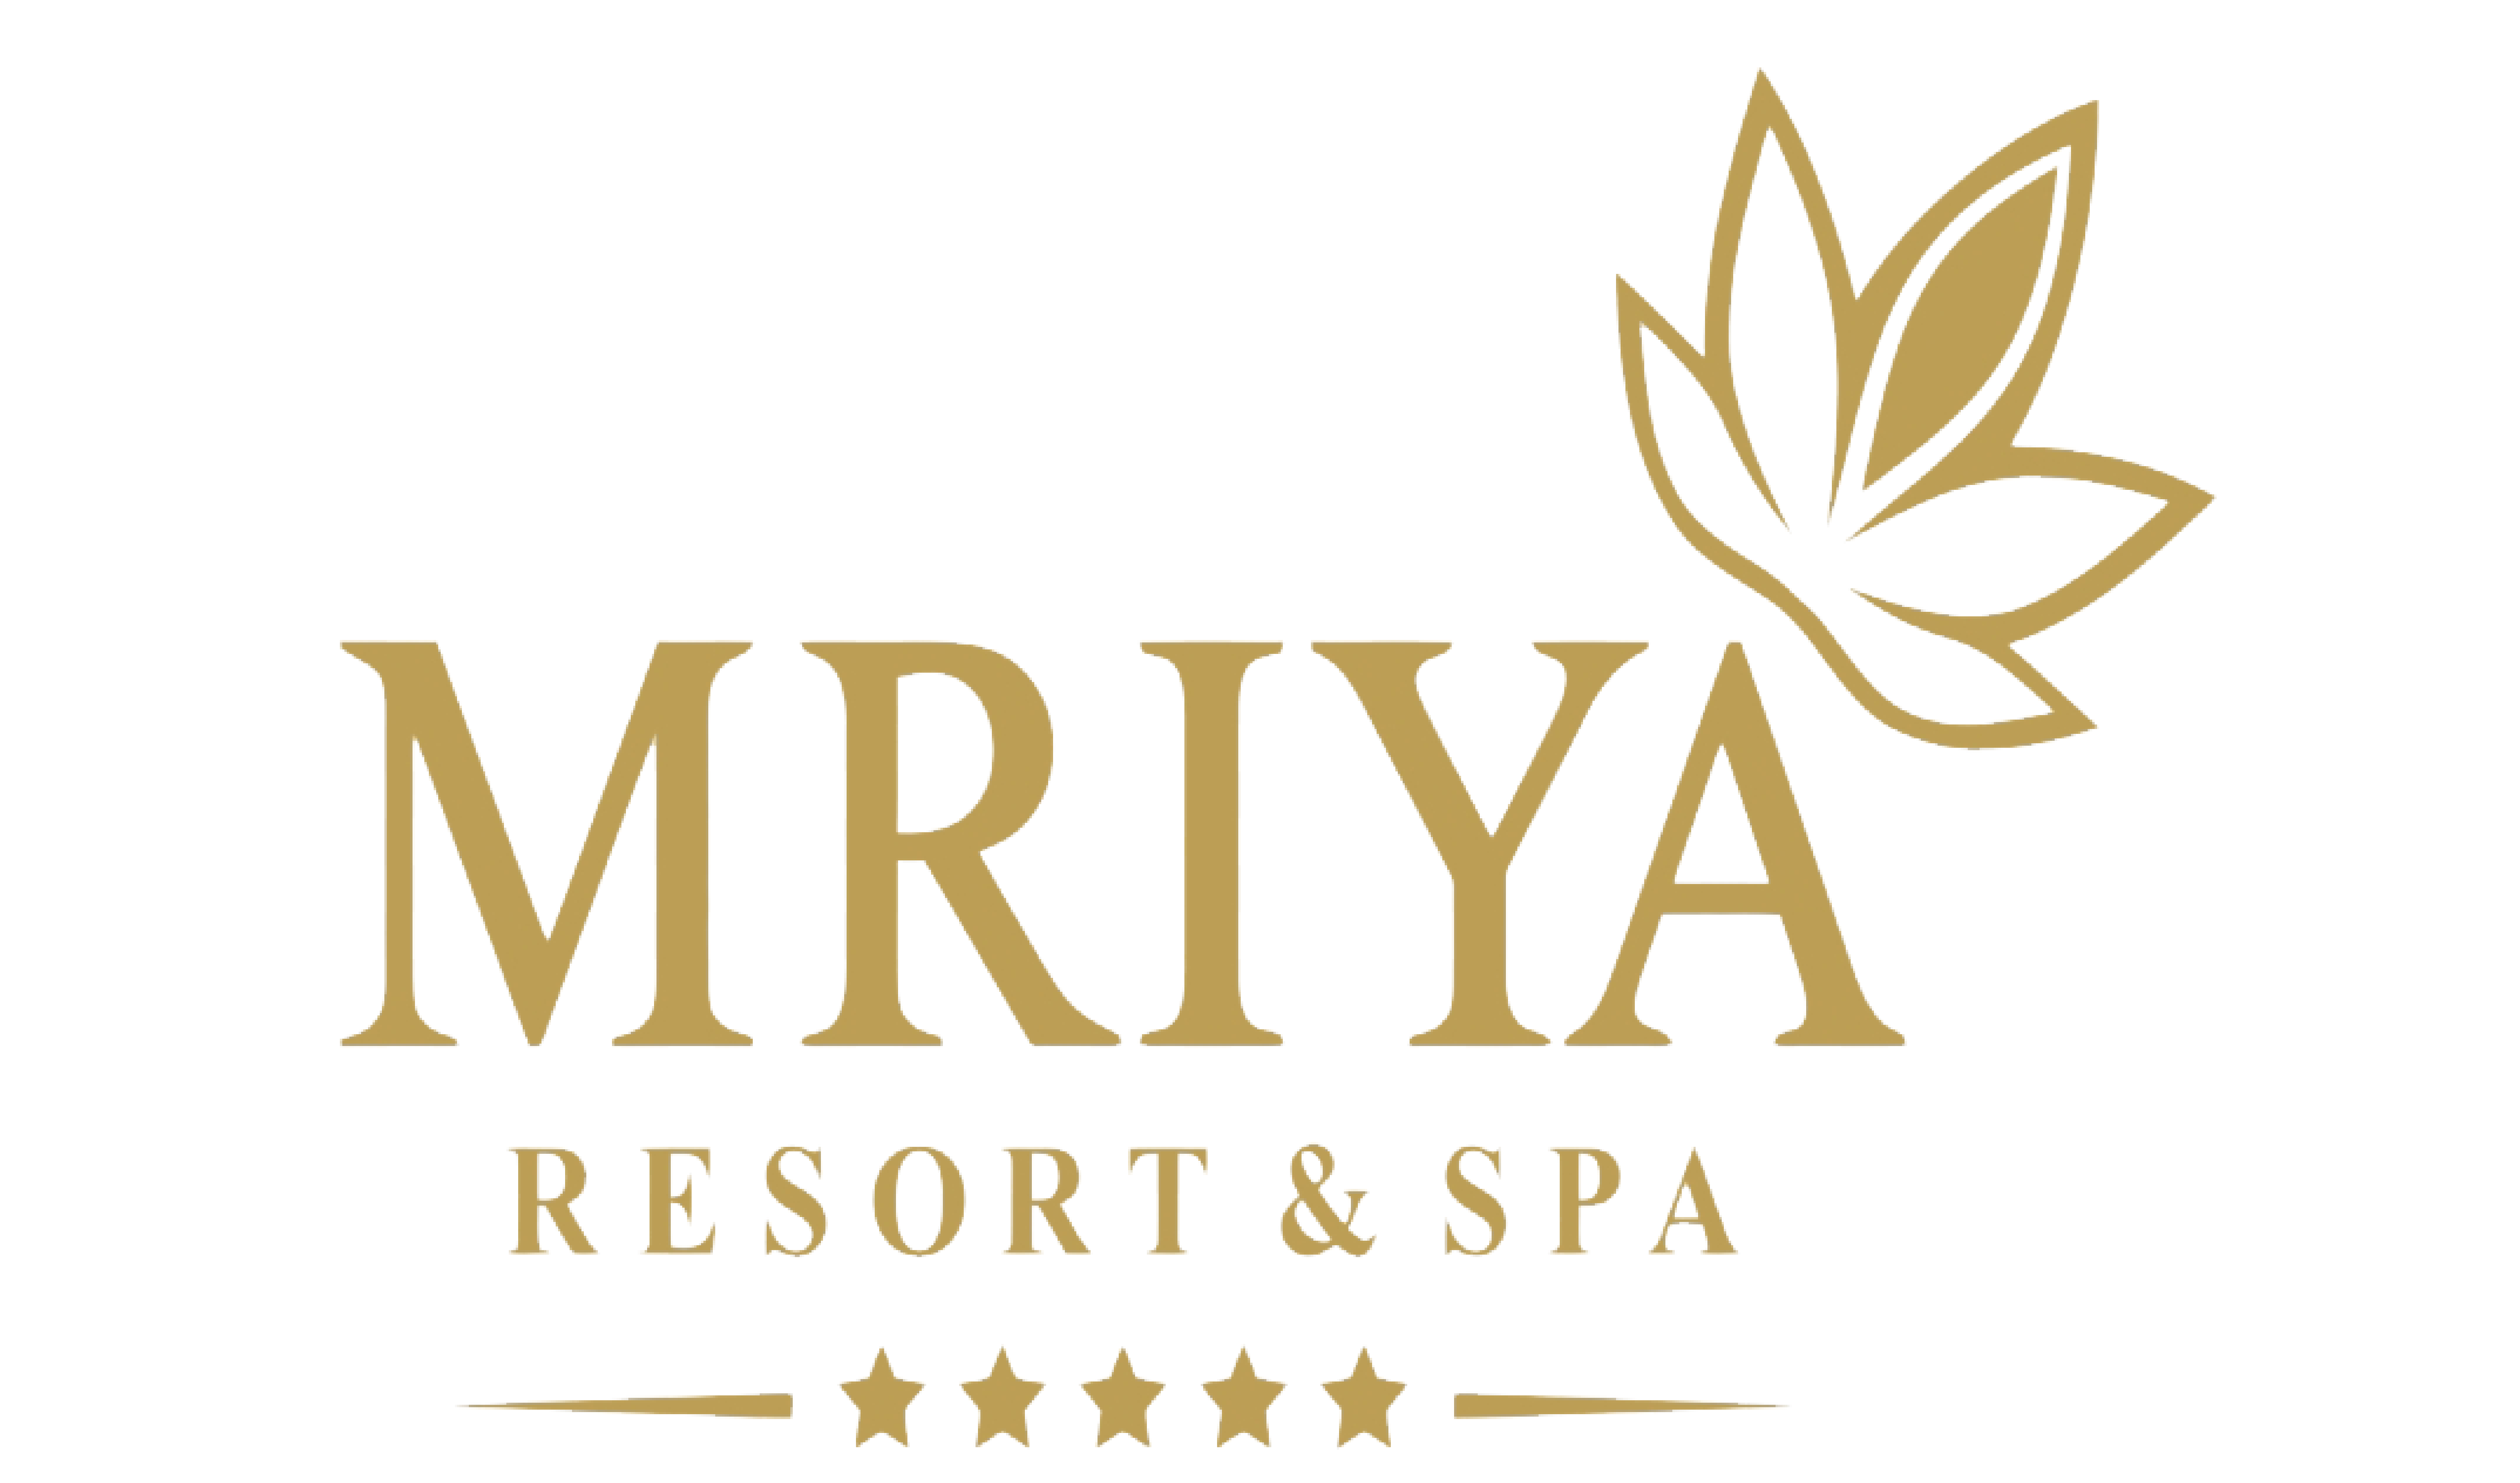 Mriya resort & spa logo